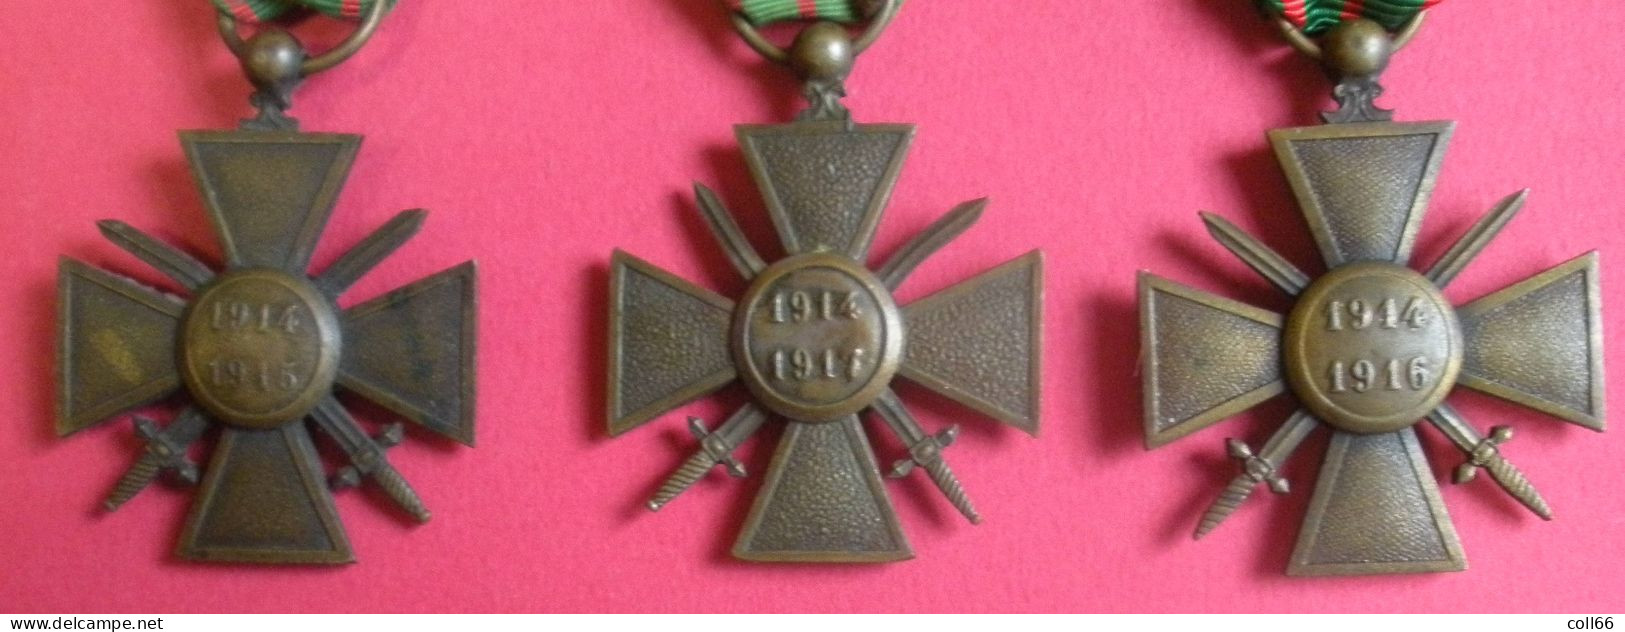 Ww1 Décorations Médailles 3 Croix De Guerre Avec Distinctions De Poilus 1914-1915 1914-1916 1914-1917 & Rubans - France